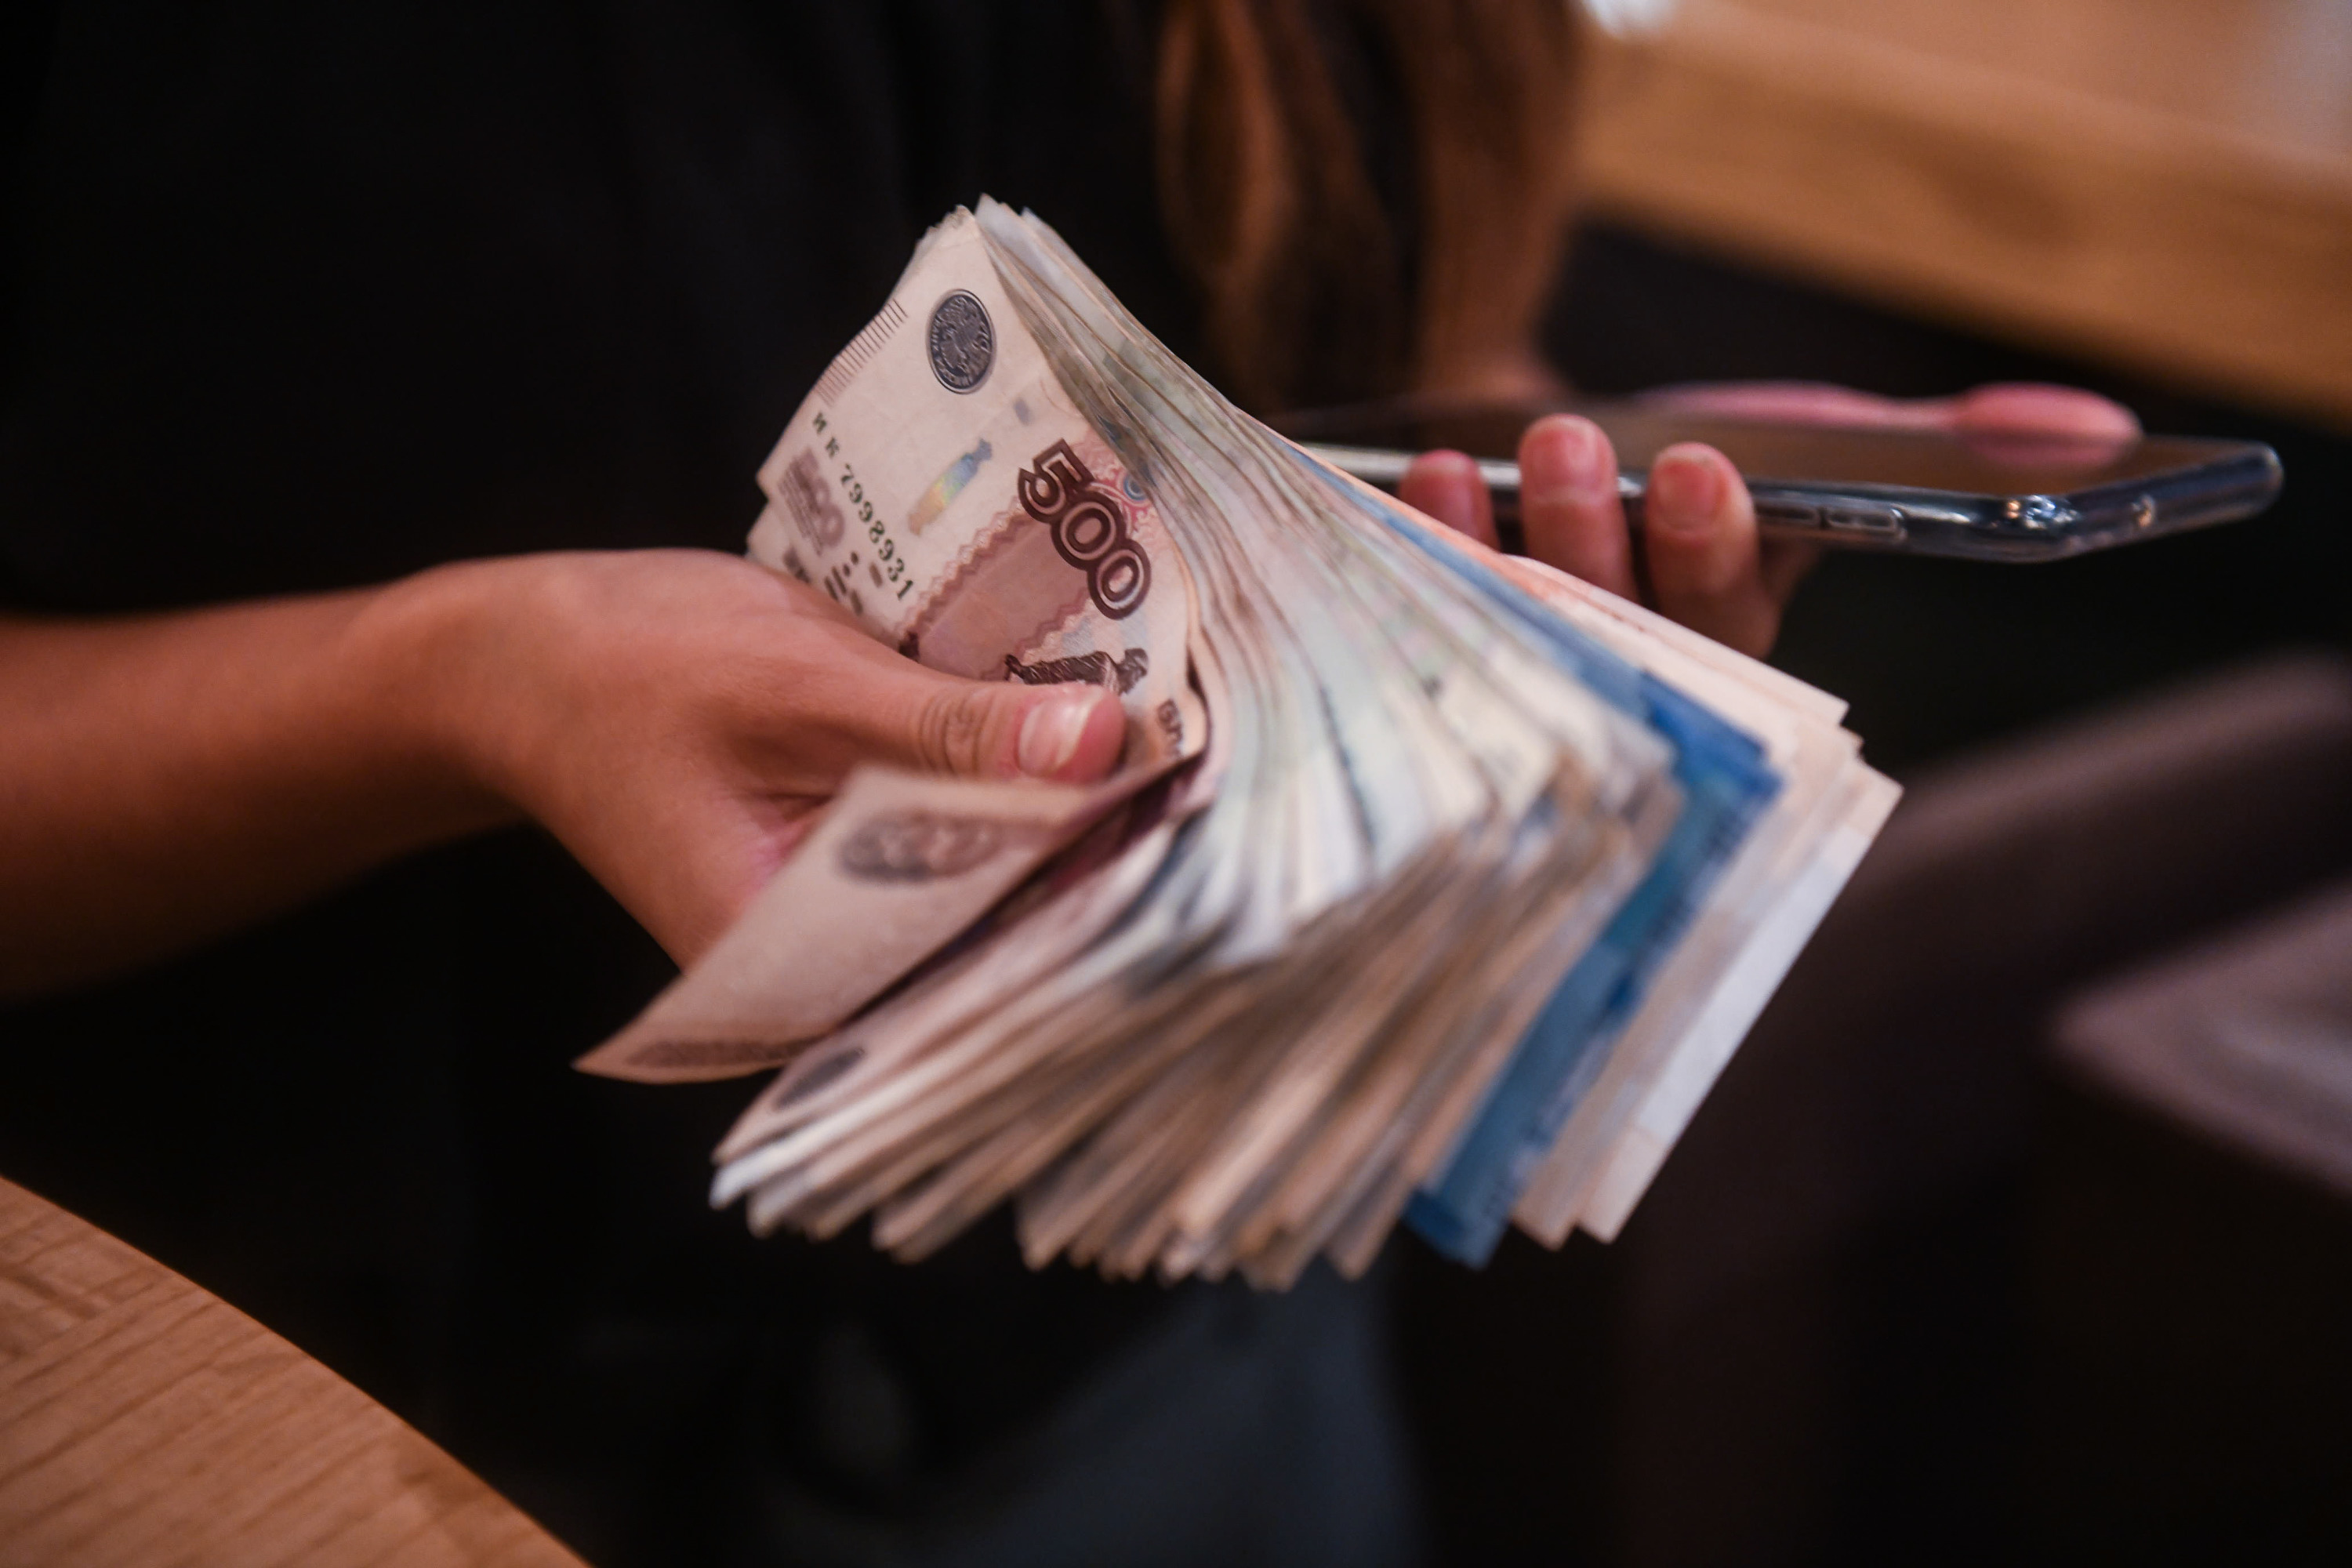 Екатеринбурженка потеряла почти 900 тысяч рублей, пытаясь получить компенсацию за некачественные лекарства